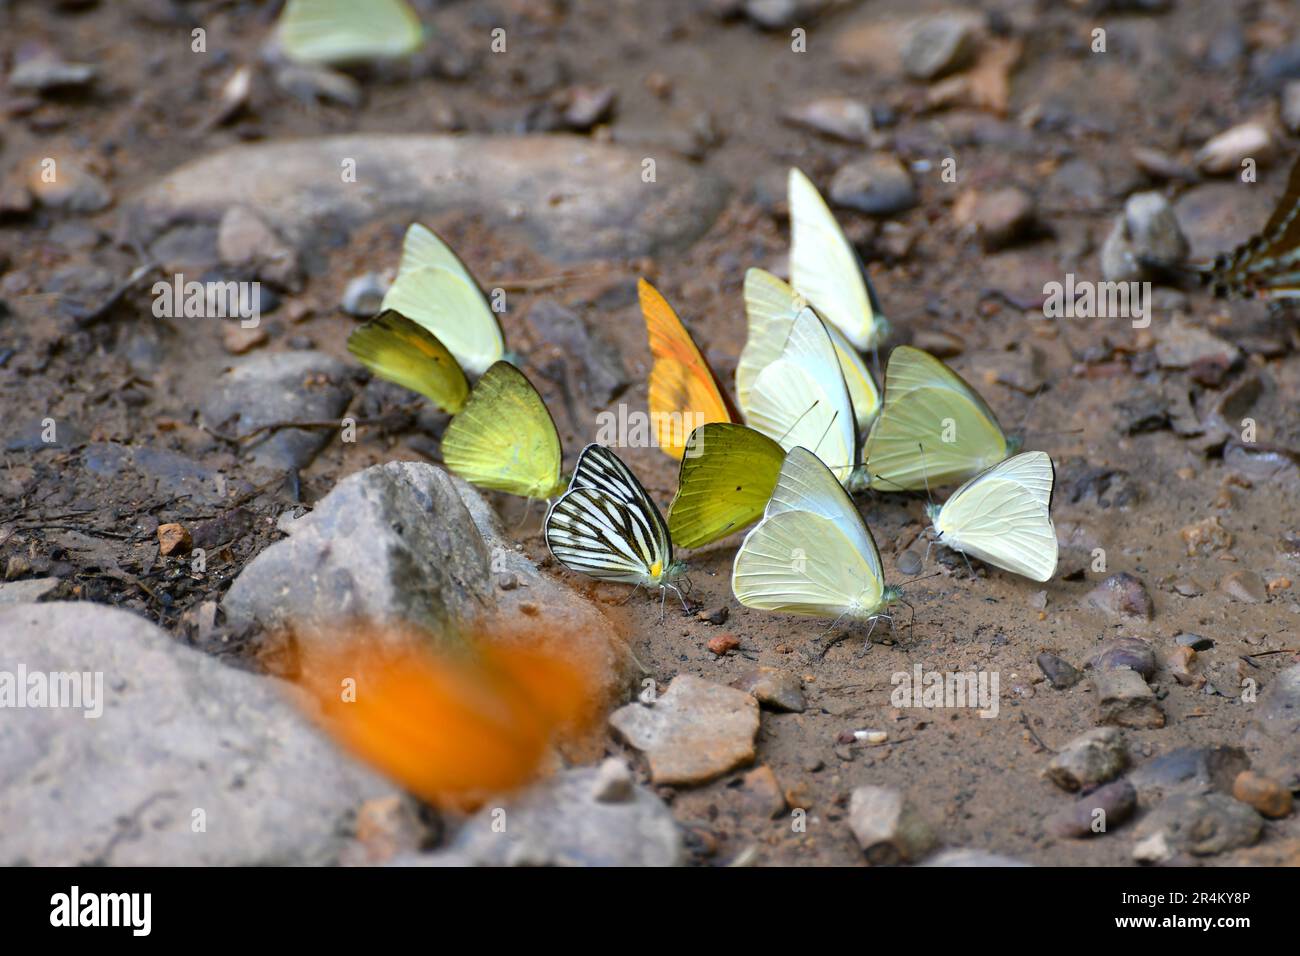 Papillon au parc national de Kaeng Krachan, Thaïlande. On trouve environ 300 espèces de papillons dans le parc de mars à juin chaque année. Banque D'Images